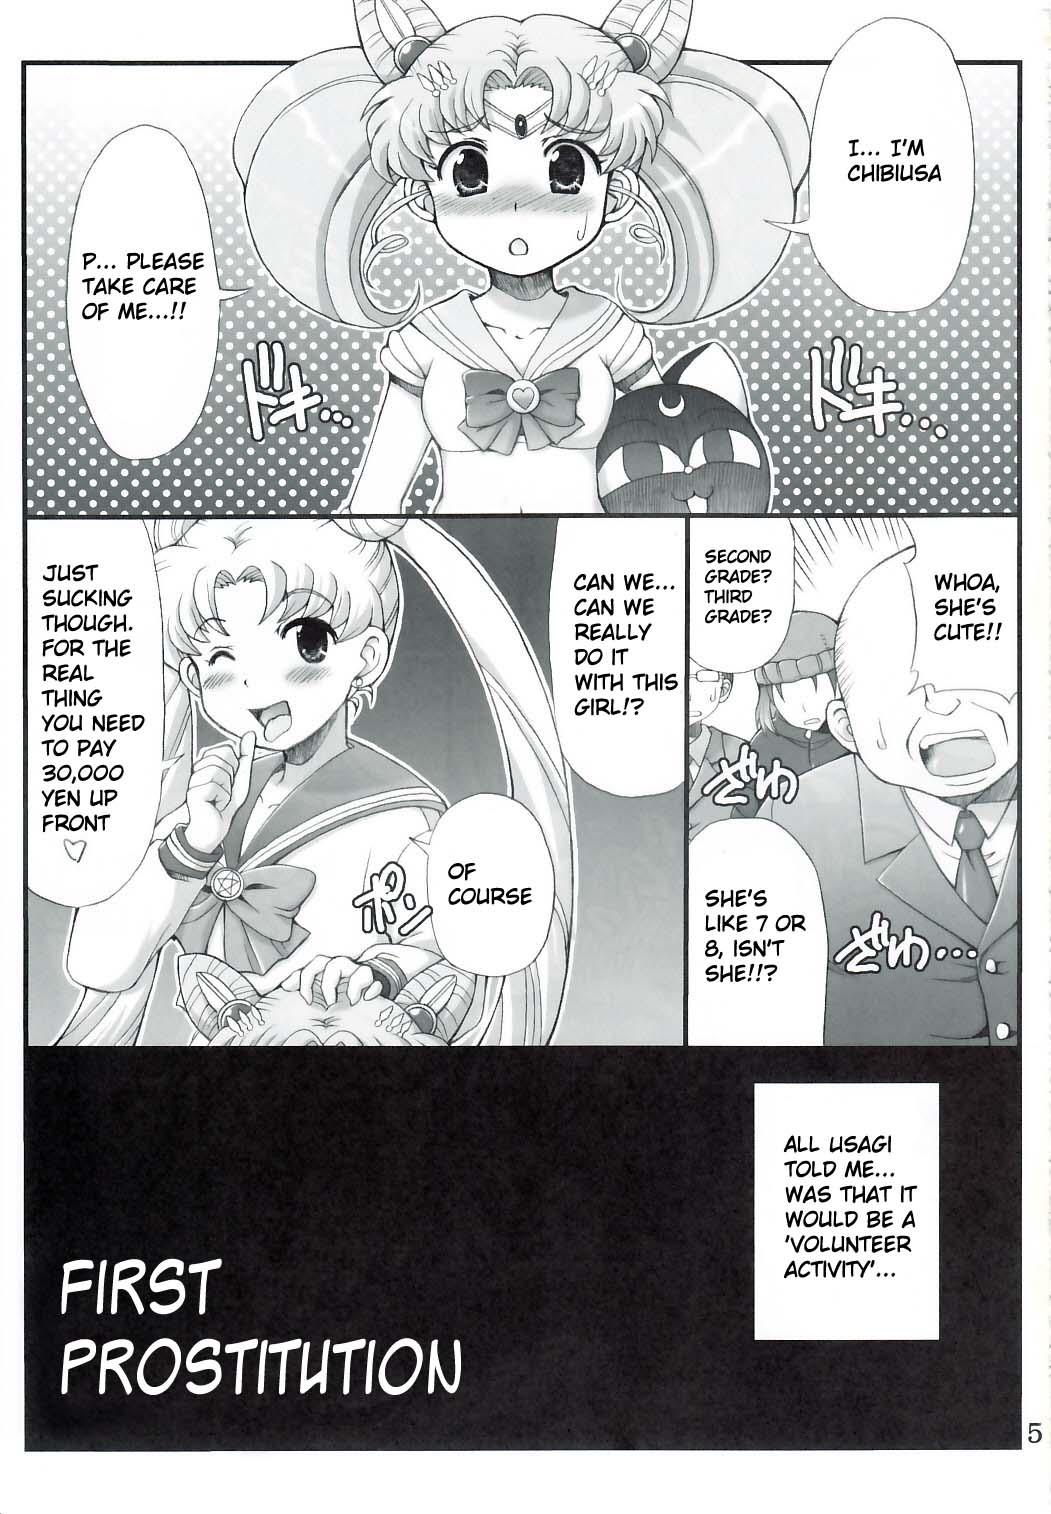 Baile Lovely Battle Suit HALF & HALF - Sailor moon Bigass - Page 2